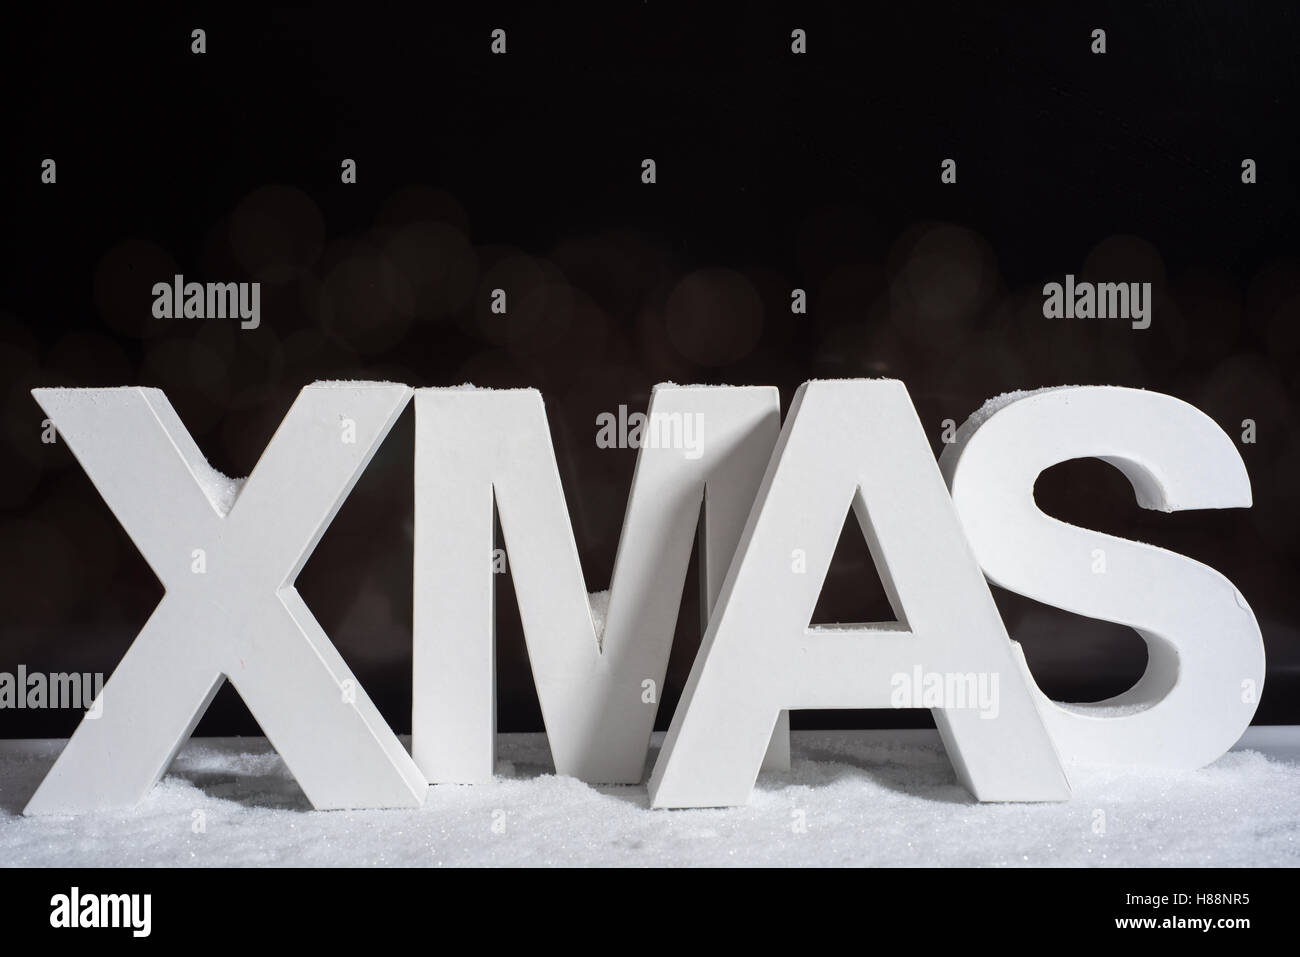 Navidad en letras blancas con fondo negro Foto de stock